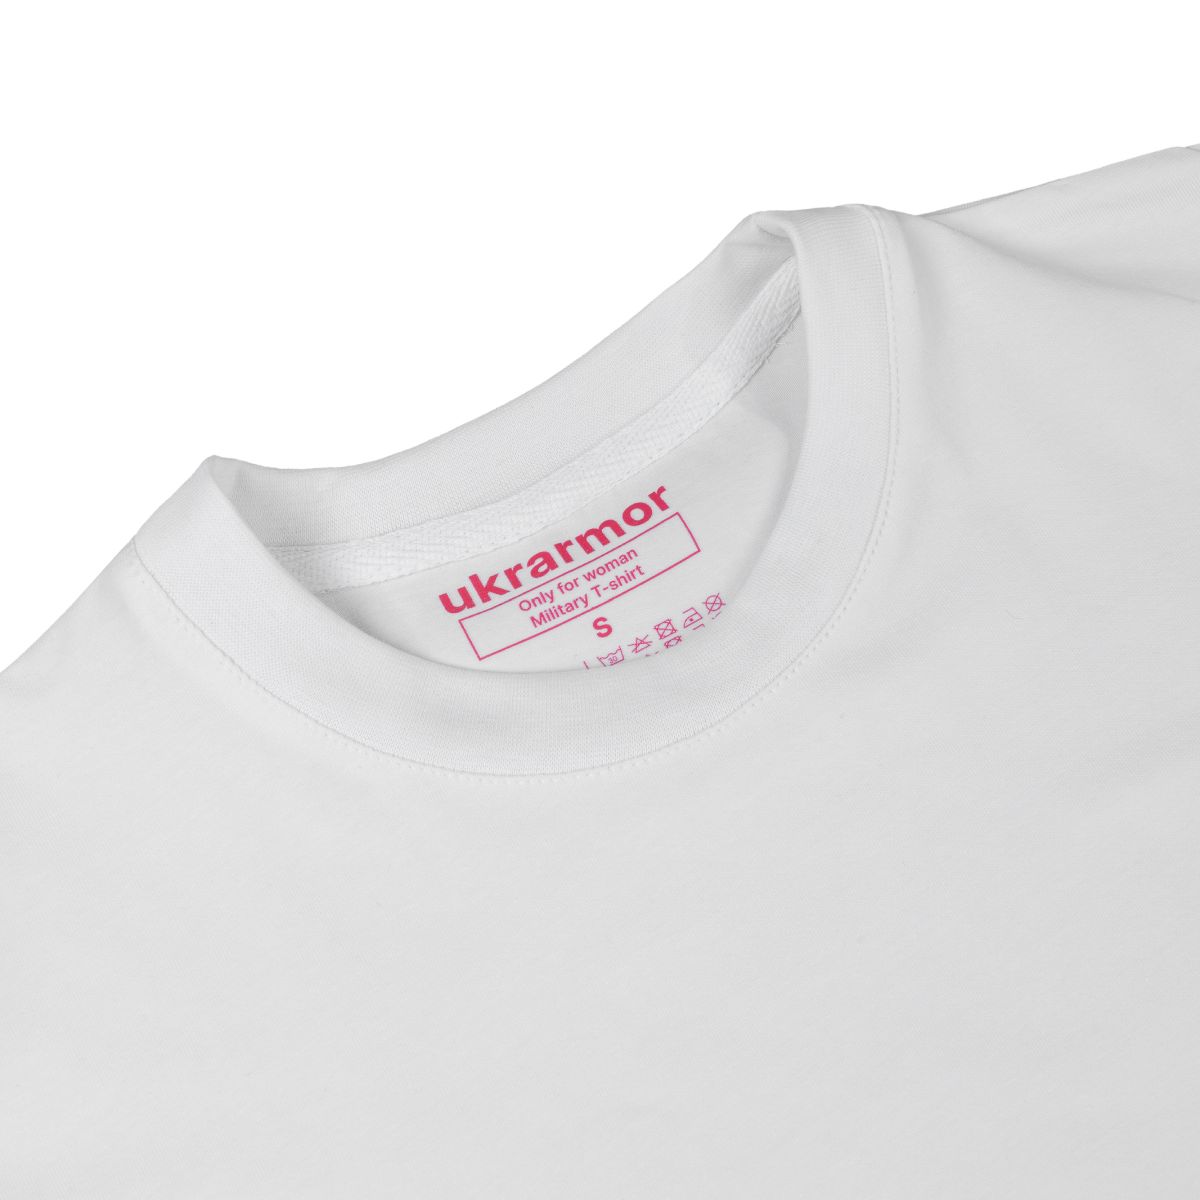 Жіноча футболка з логотипом Ukrarmor Only for women. Білий 4